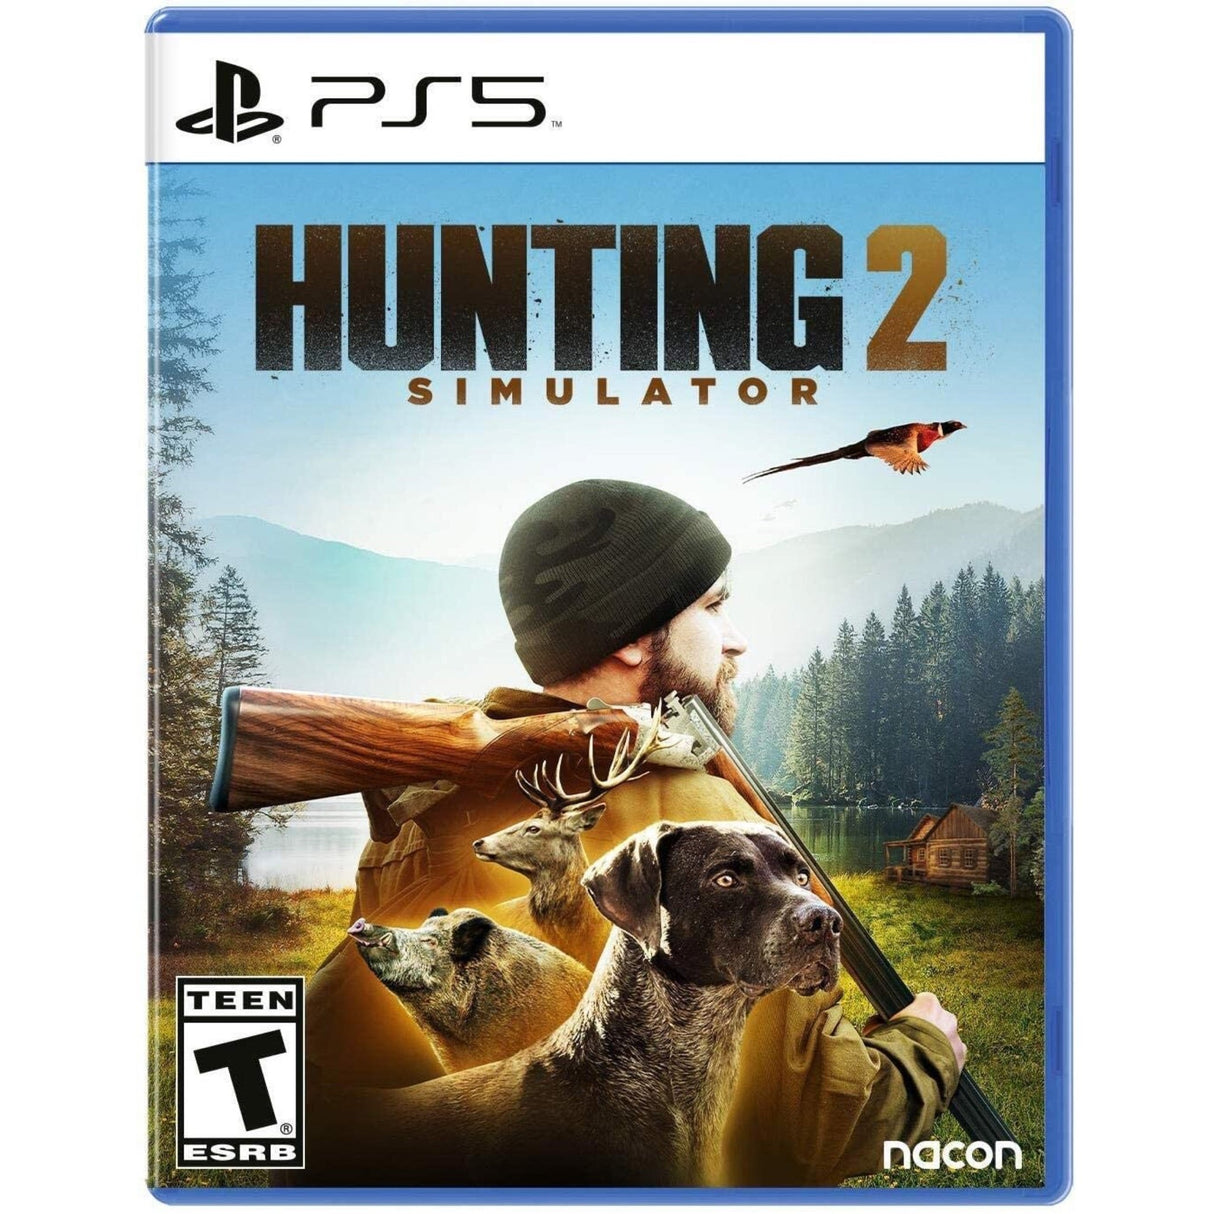 Hunting Simulator 2 for PlayStation 5 “Region 1” - Level UpLevel UpPlaystation Video Games814290016906